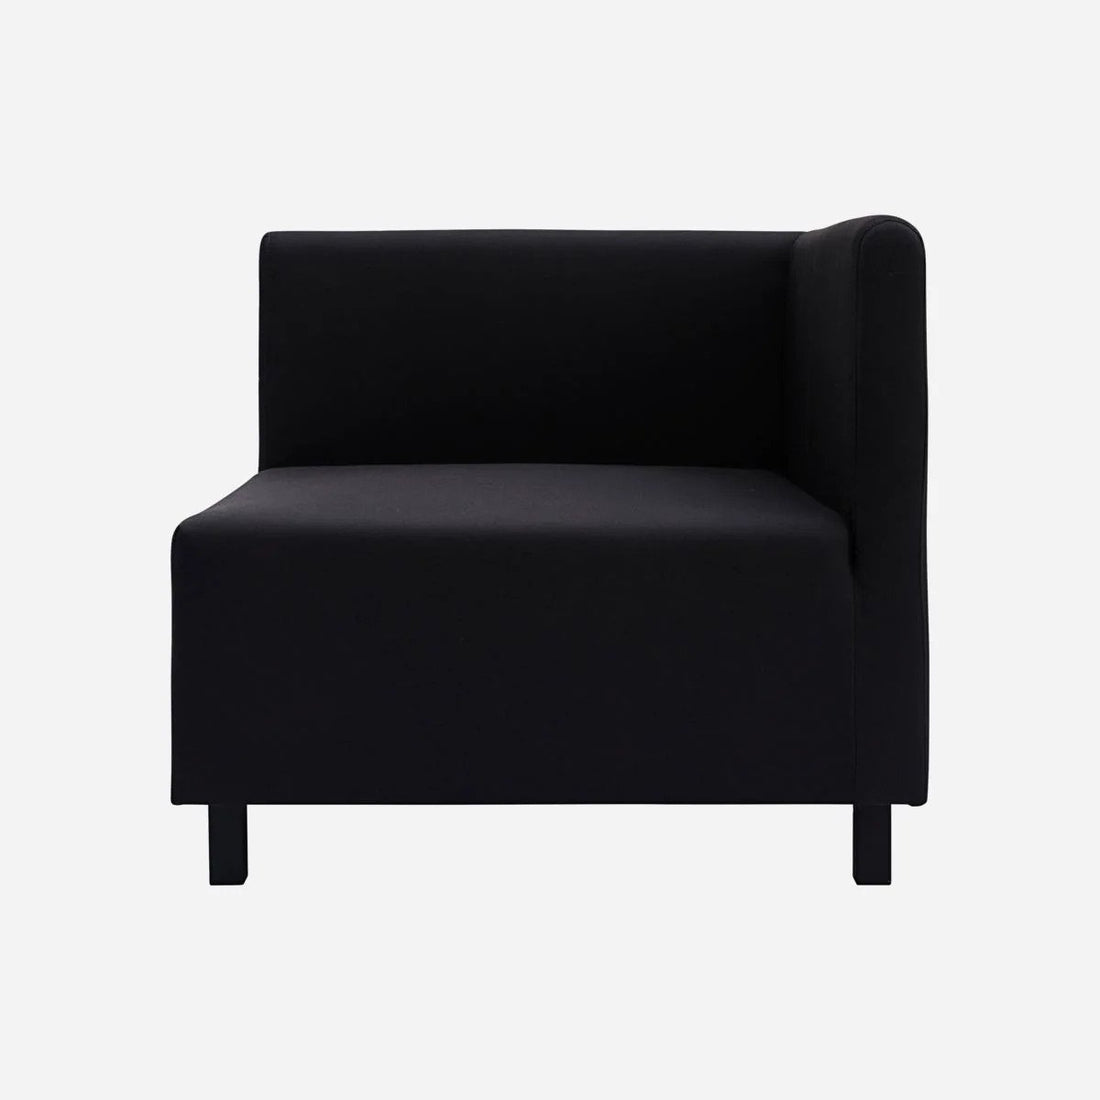 Husdoktor - soffa, hörnavsnitt, svart 85x85x44 cm